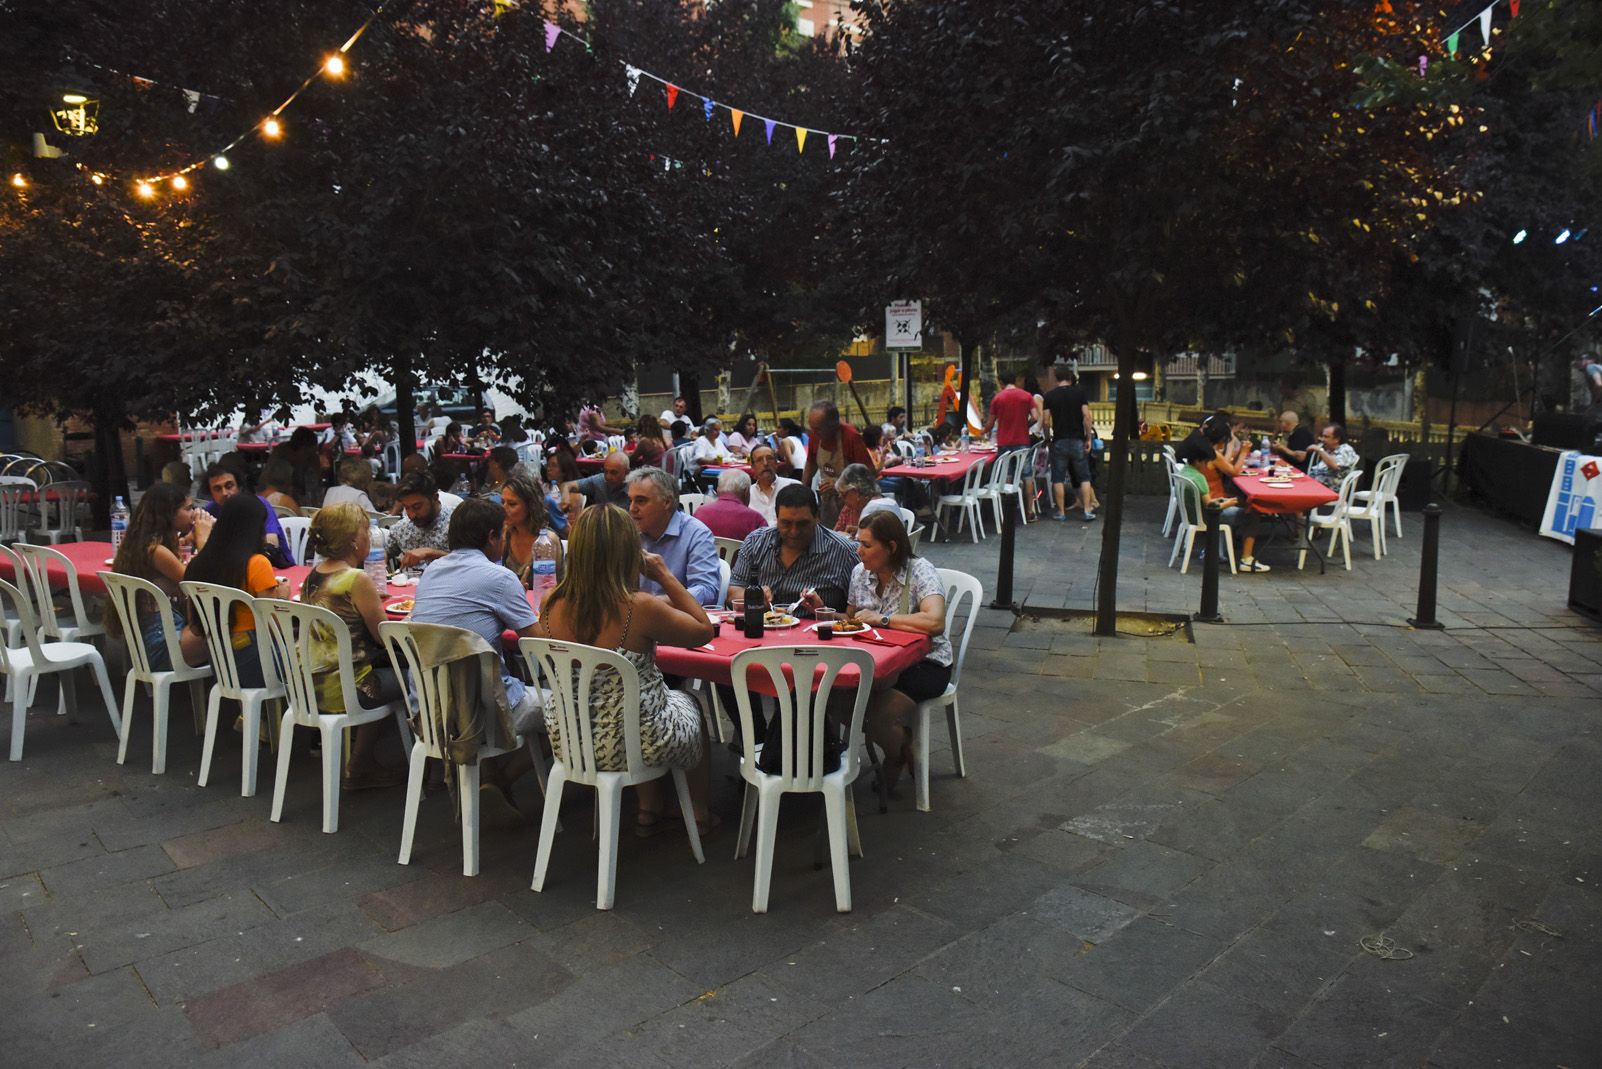 El barri Centre Estació sempre celebra sopars, vermuts i trobades per festa major. Foto: Bernat Millet.